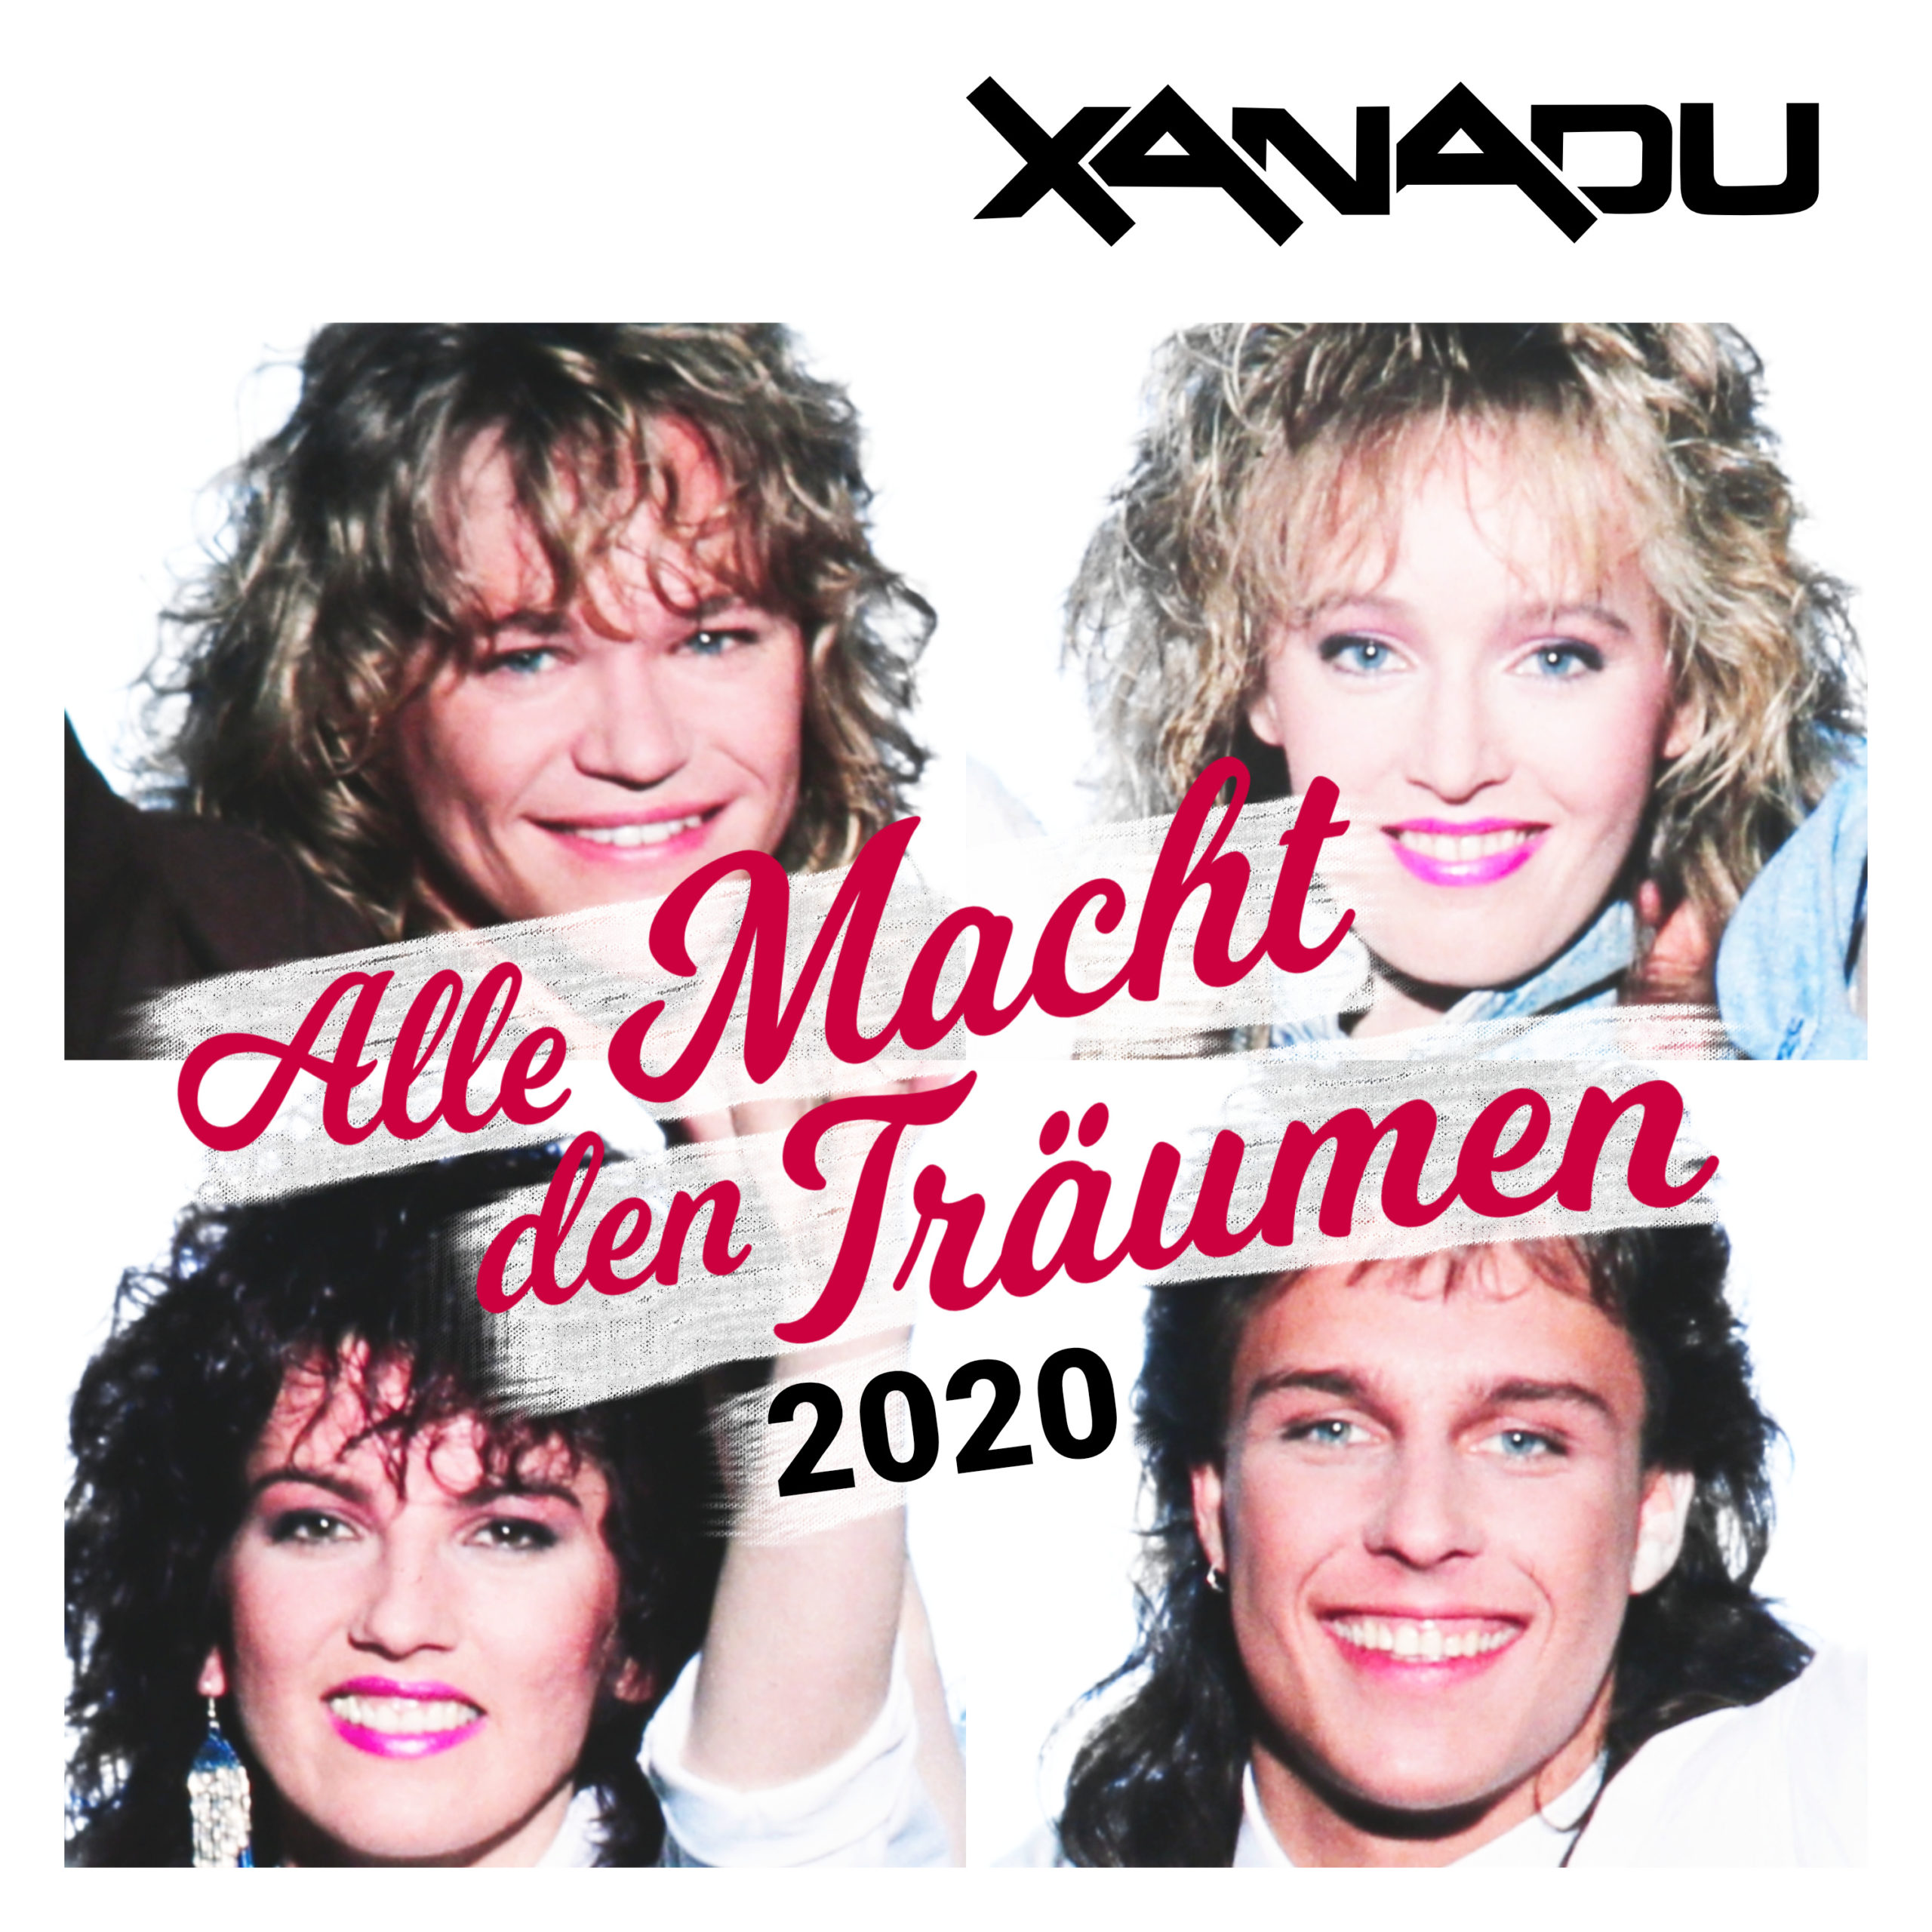 Xanadu - Alle Macht den Träumen (2020) (2020)